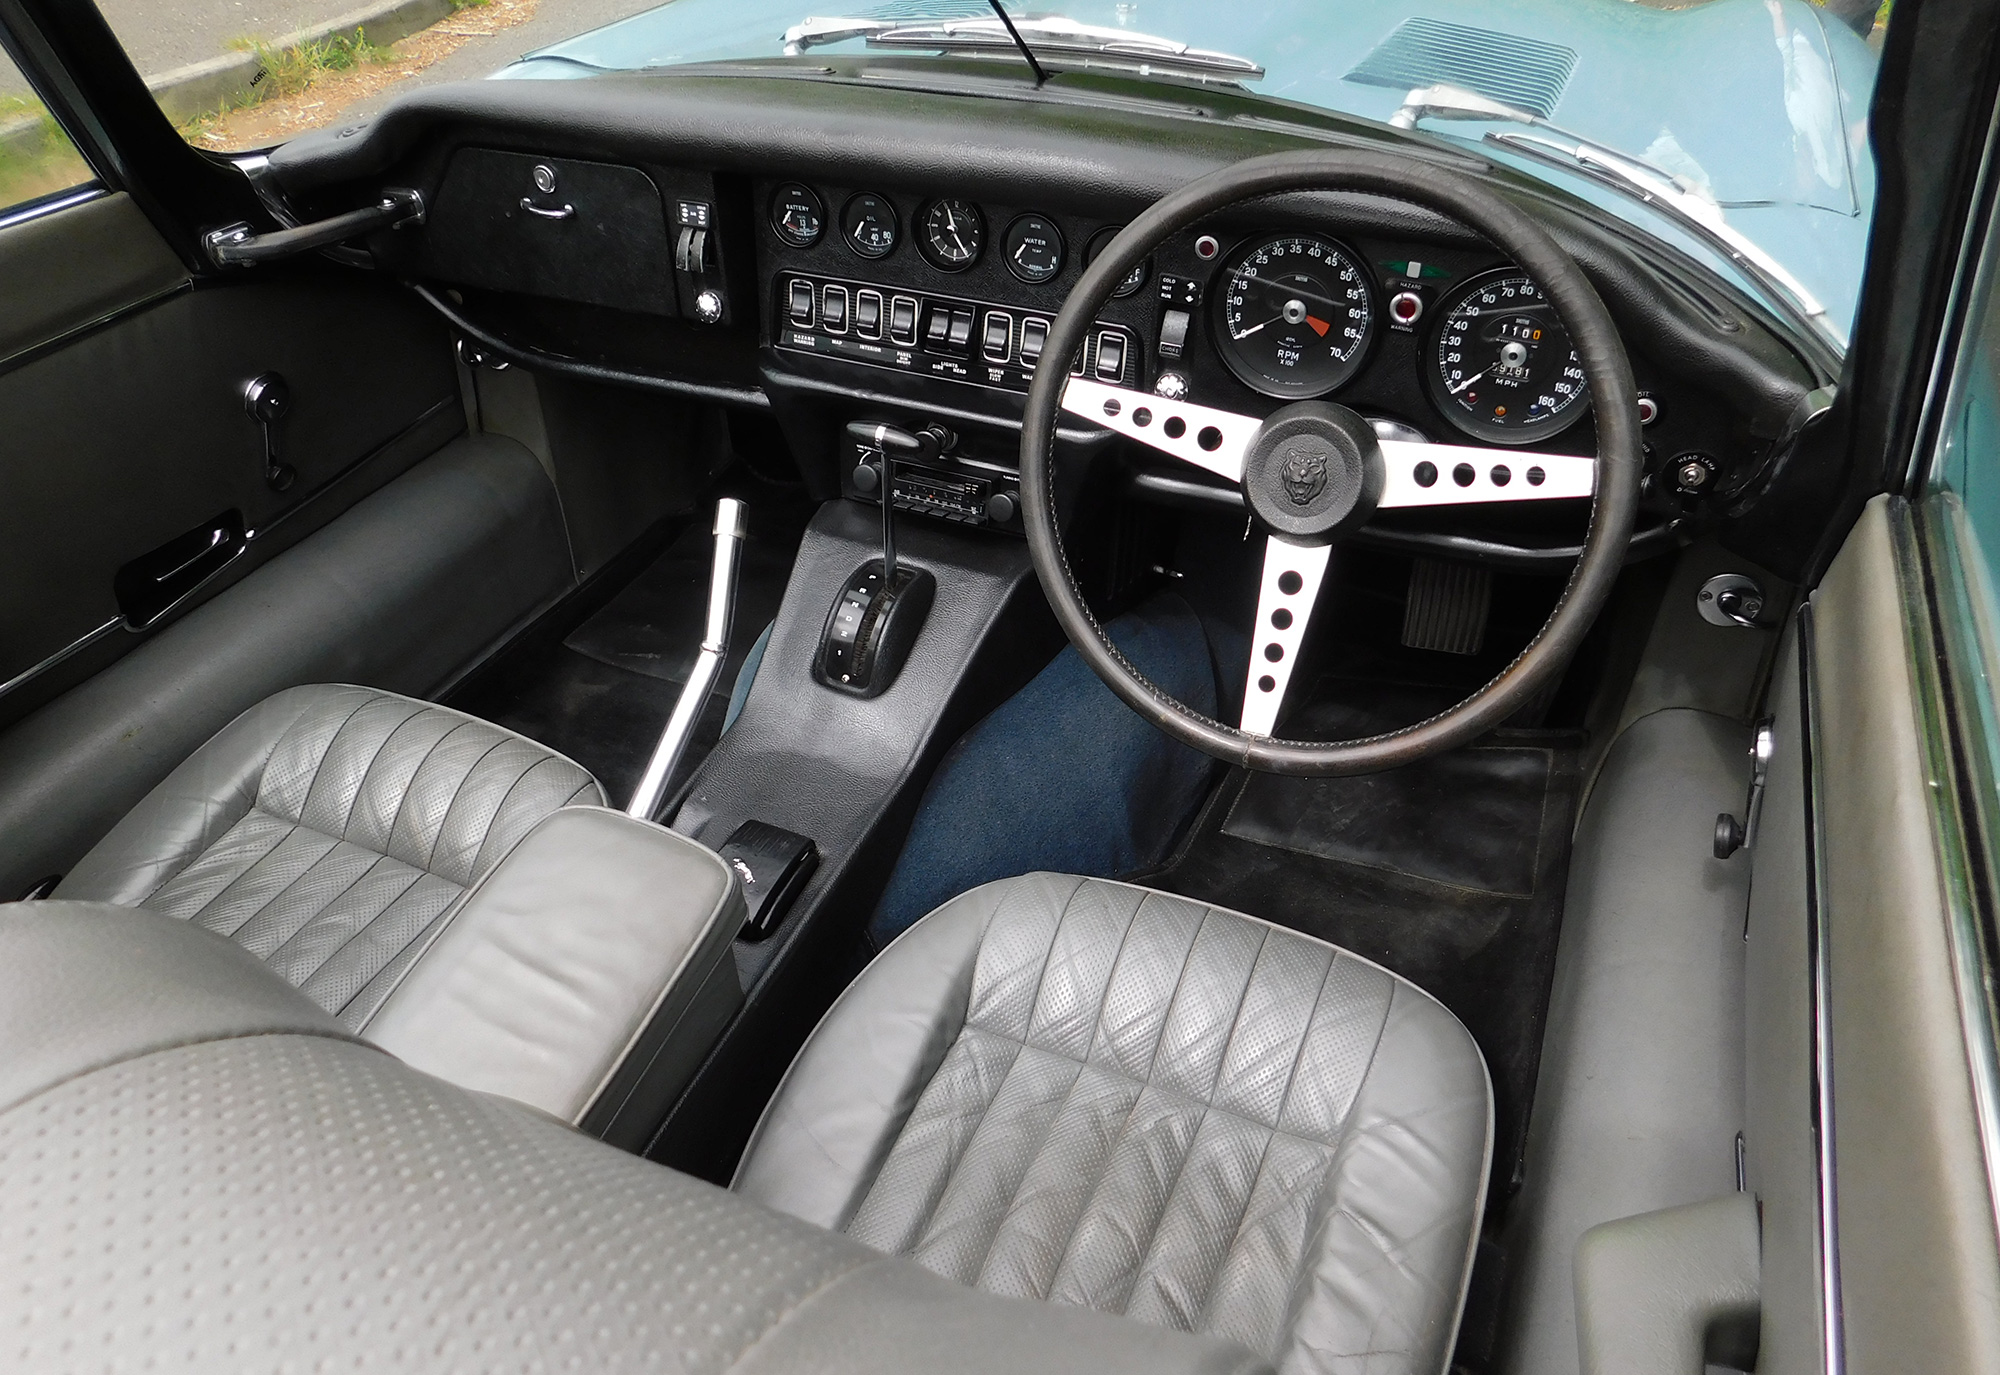 1971-Jaguar-E-Type-Series-III-V12-Roadster-interior.jpg